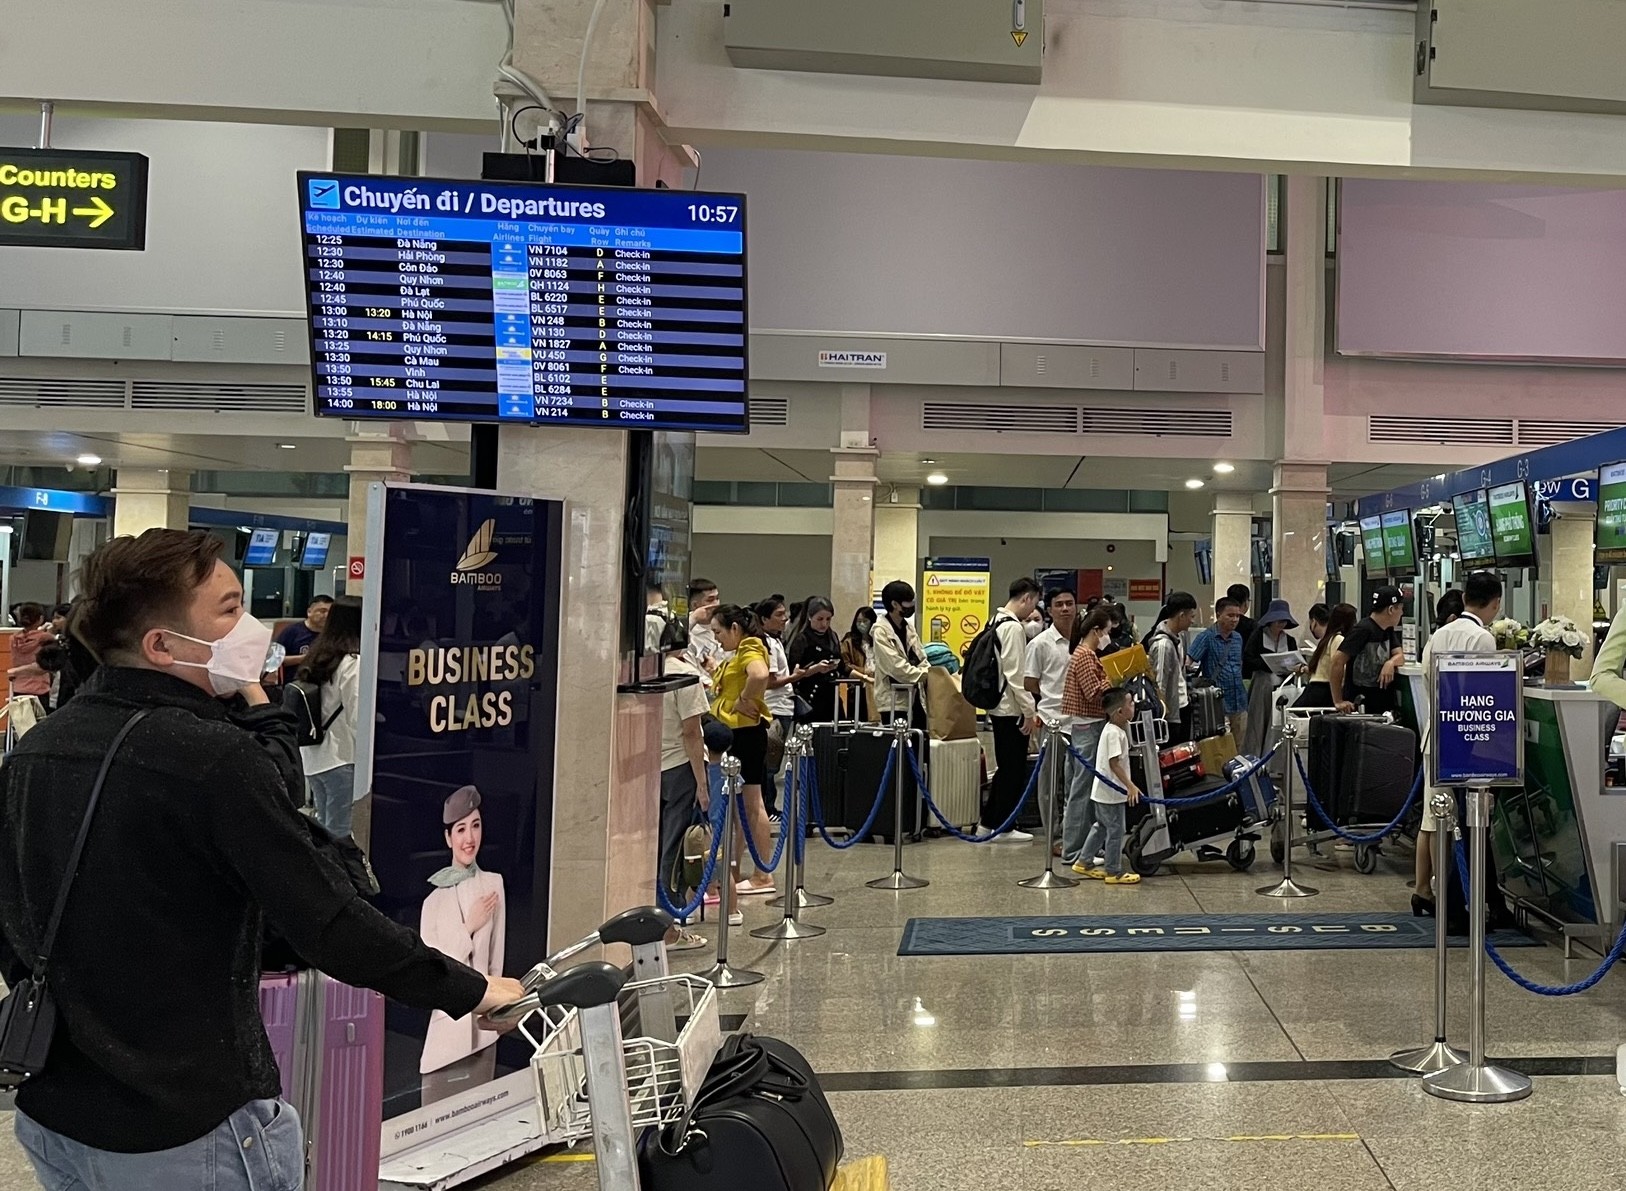 Sân bay Tân Sơn Nhất thông thoáng bất ngờ ngày 28 Tết ảnh 1